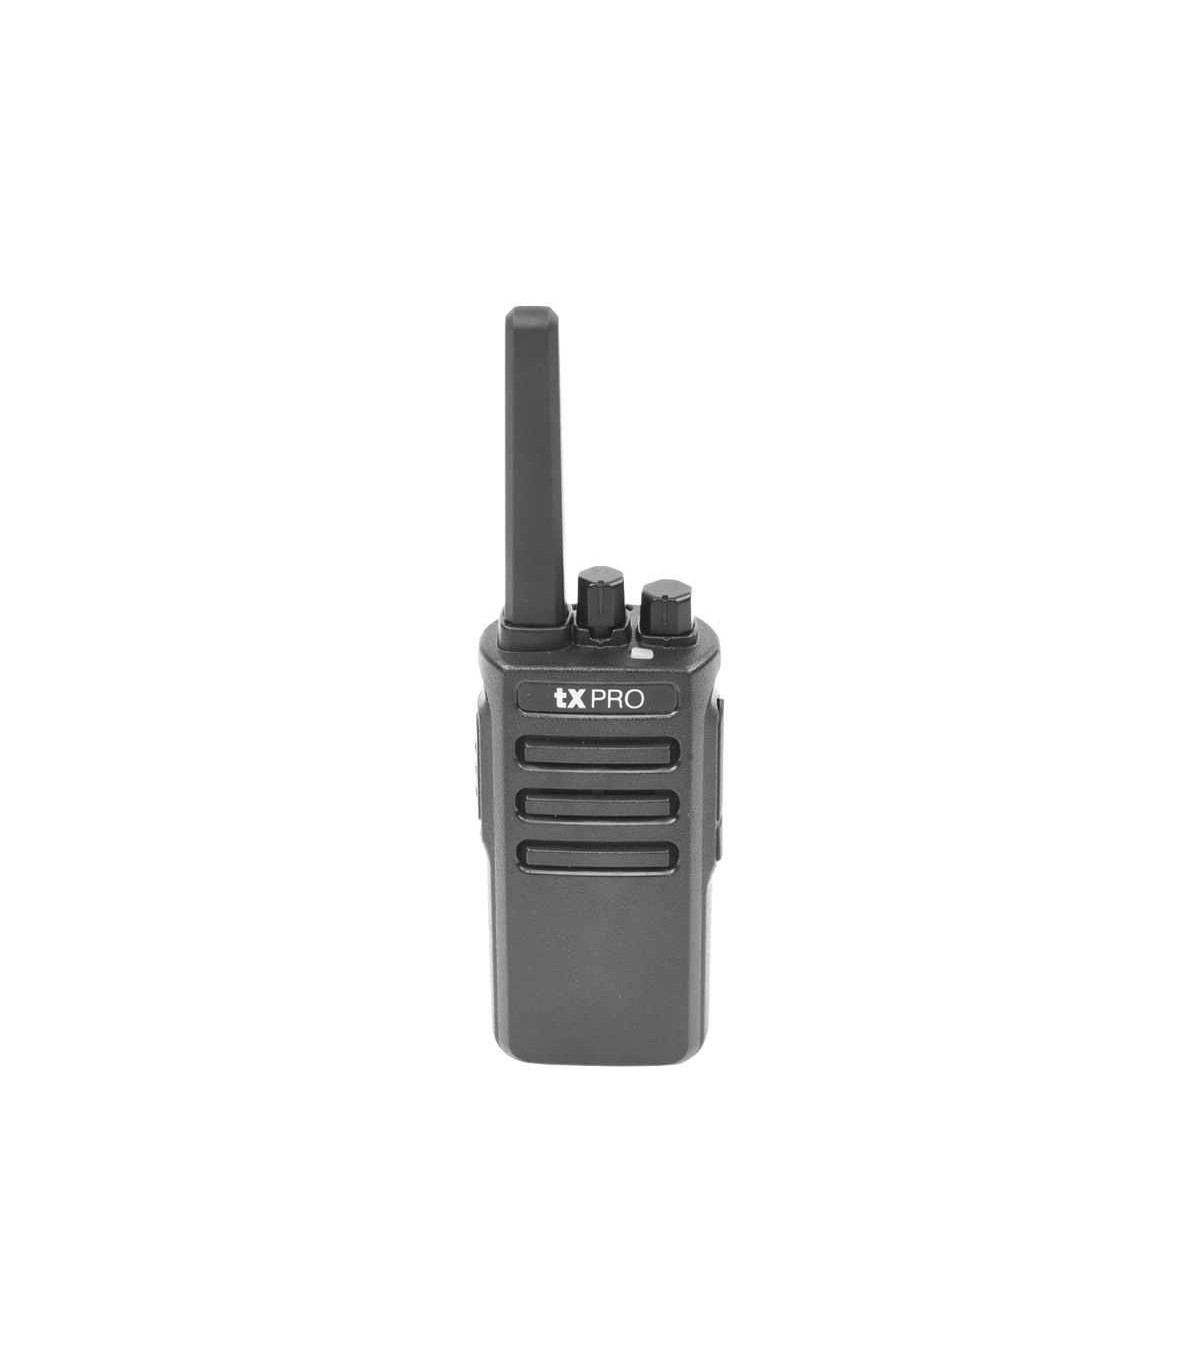 TX600 RADIO PORTÁTIL UHF, 5W DE POTENCIA, SCRAMBLER DE VOZ, ALTA 400-470 MHZ - Radiocomunicación Camaras de Seguridad Y Control Acceso